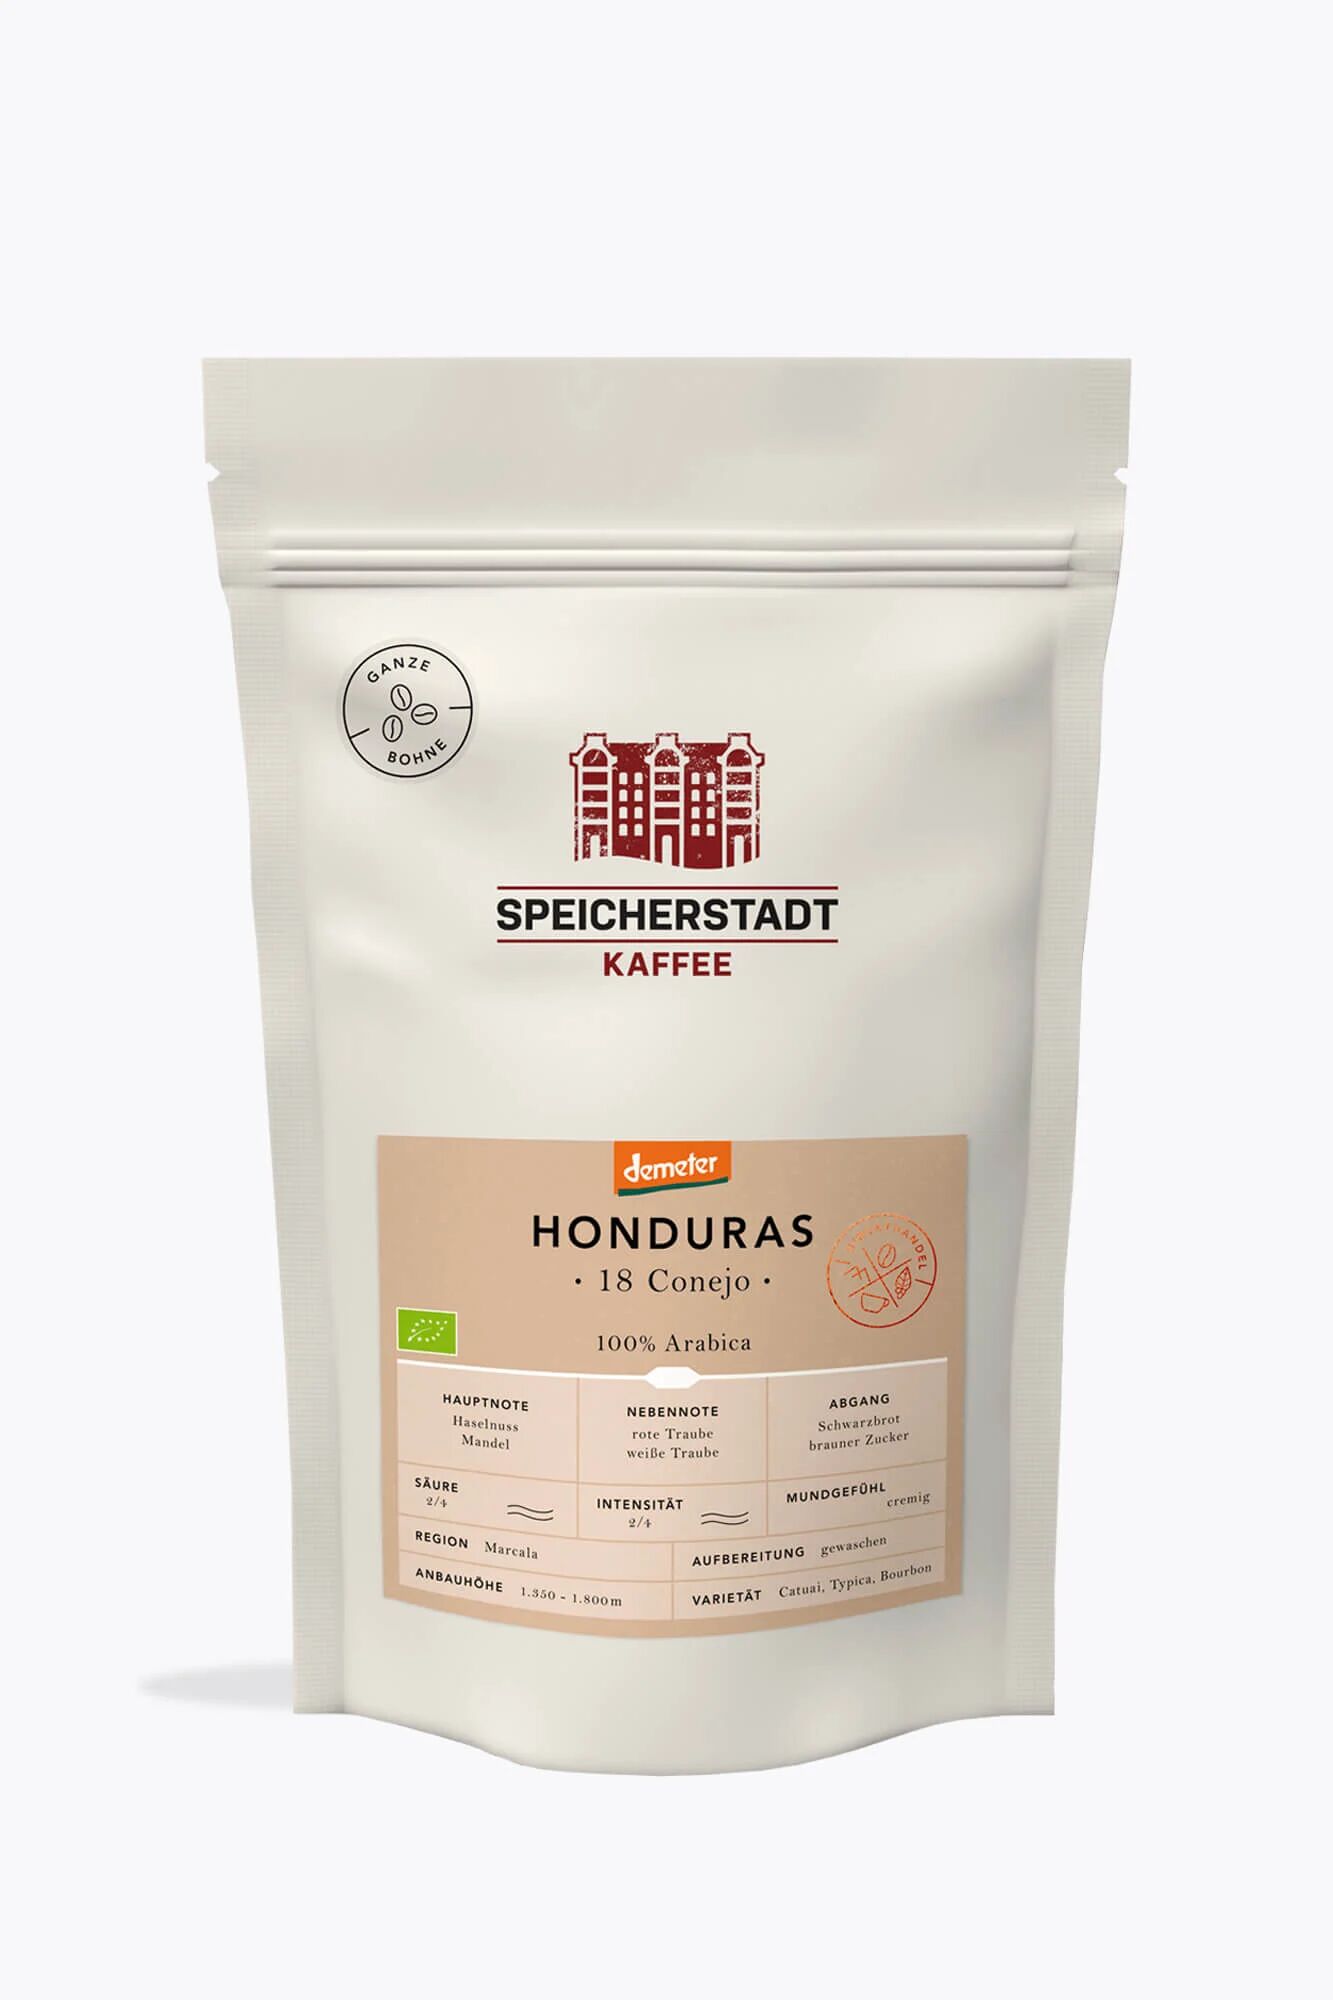 Speicherstadt Honduras 18 Conejo Bio Demeter Kaffee 500g